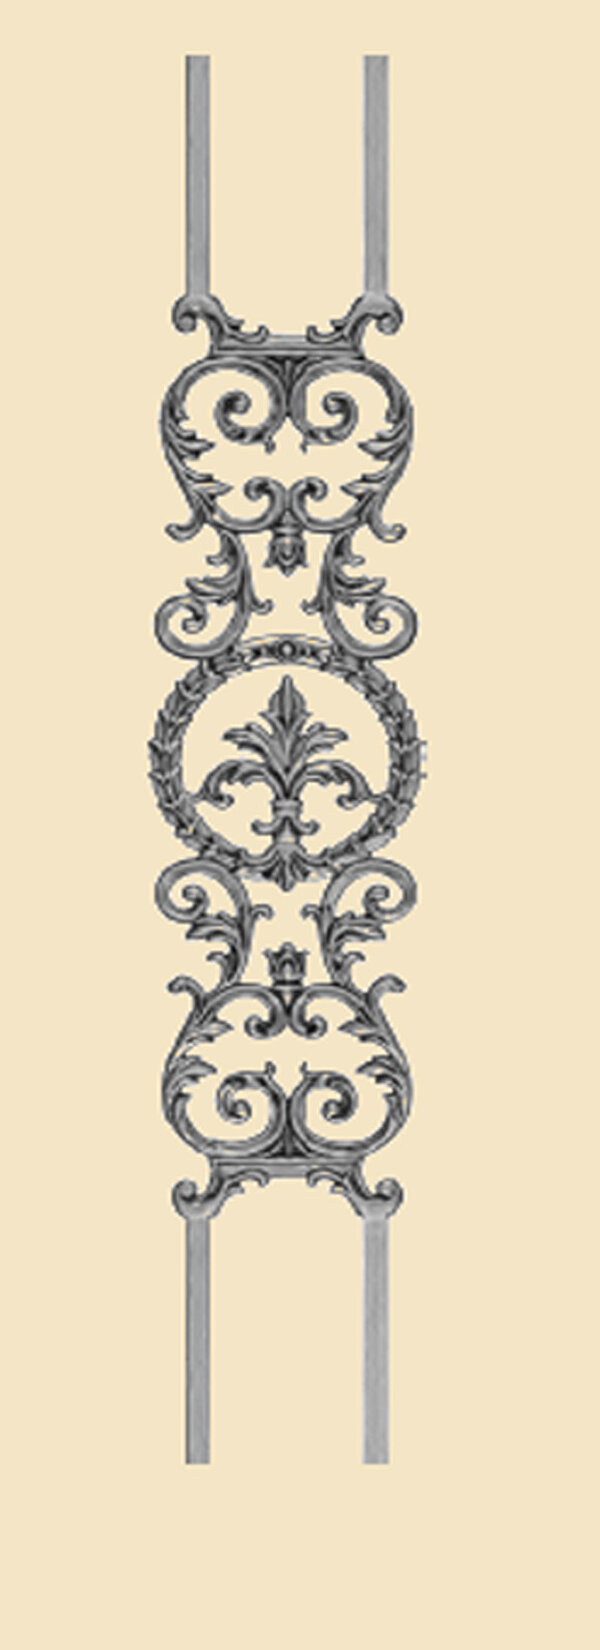 objet de decoration portails et garde corps 1502-1508